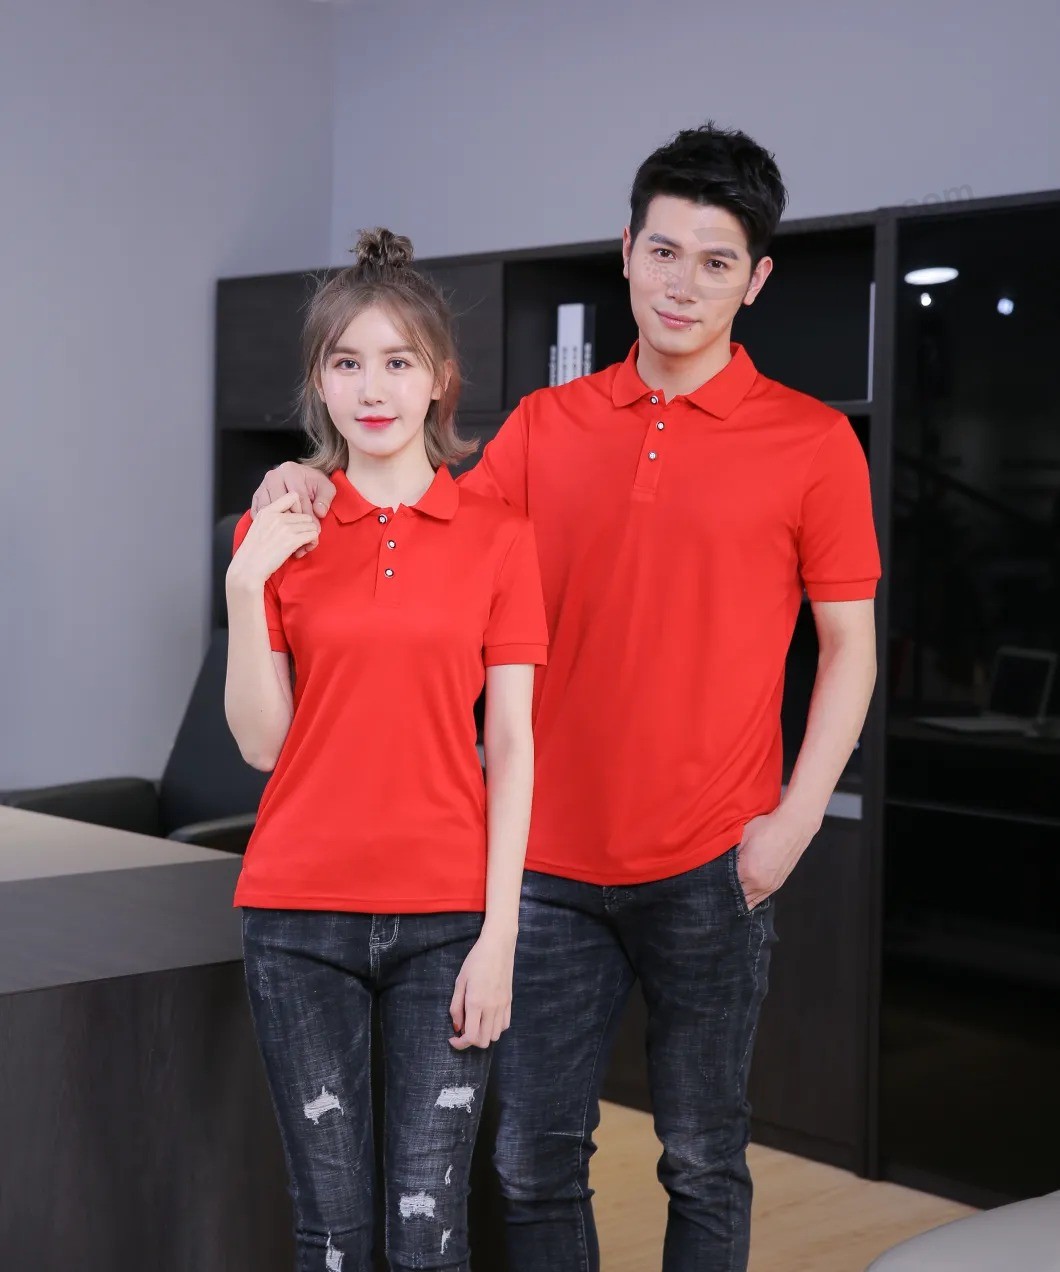 Рекламная базовая мужская и женская футболка-поло, фирменная рубашка-поло Uniform